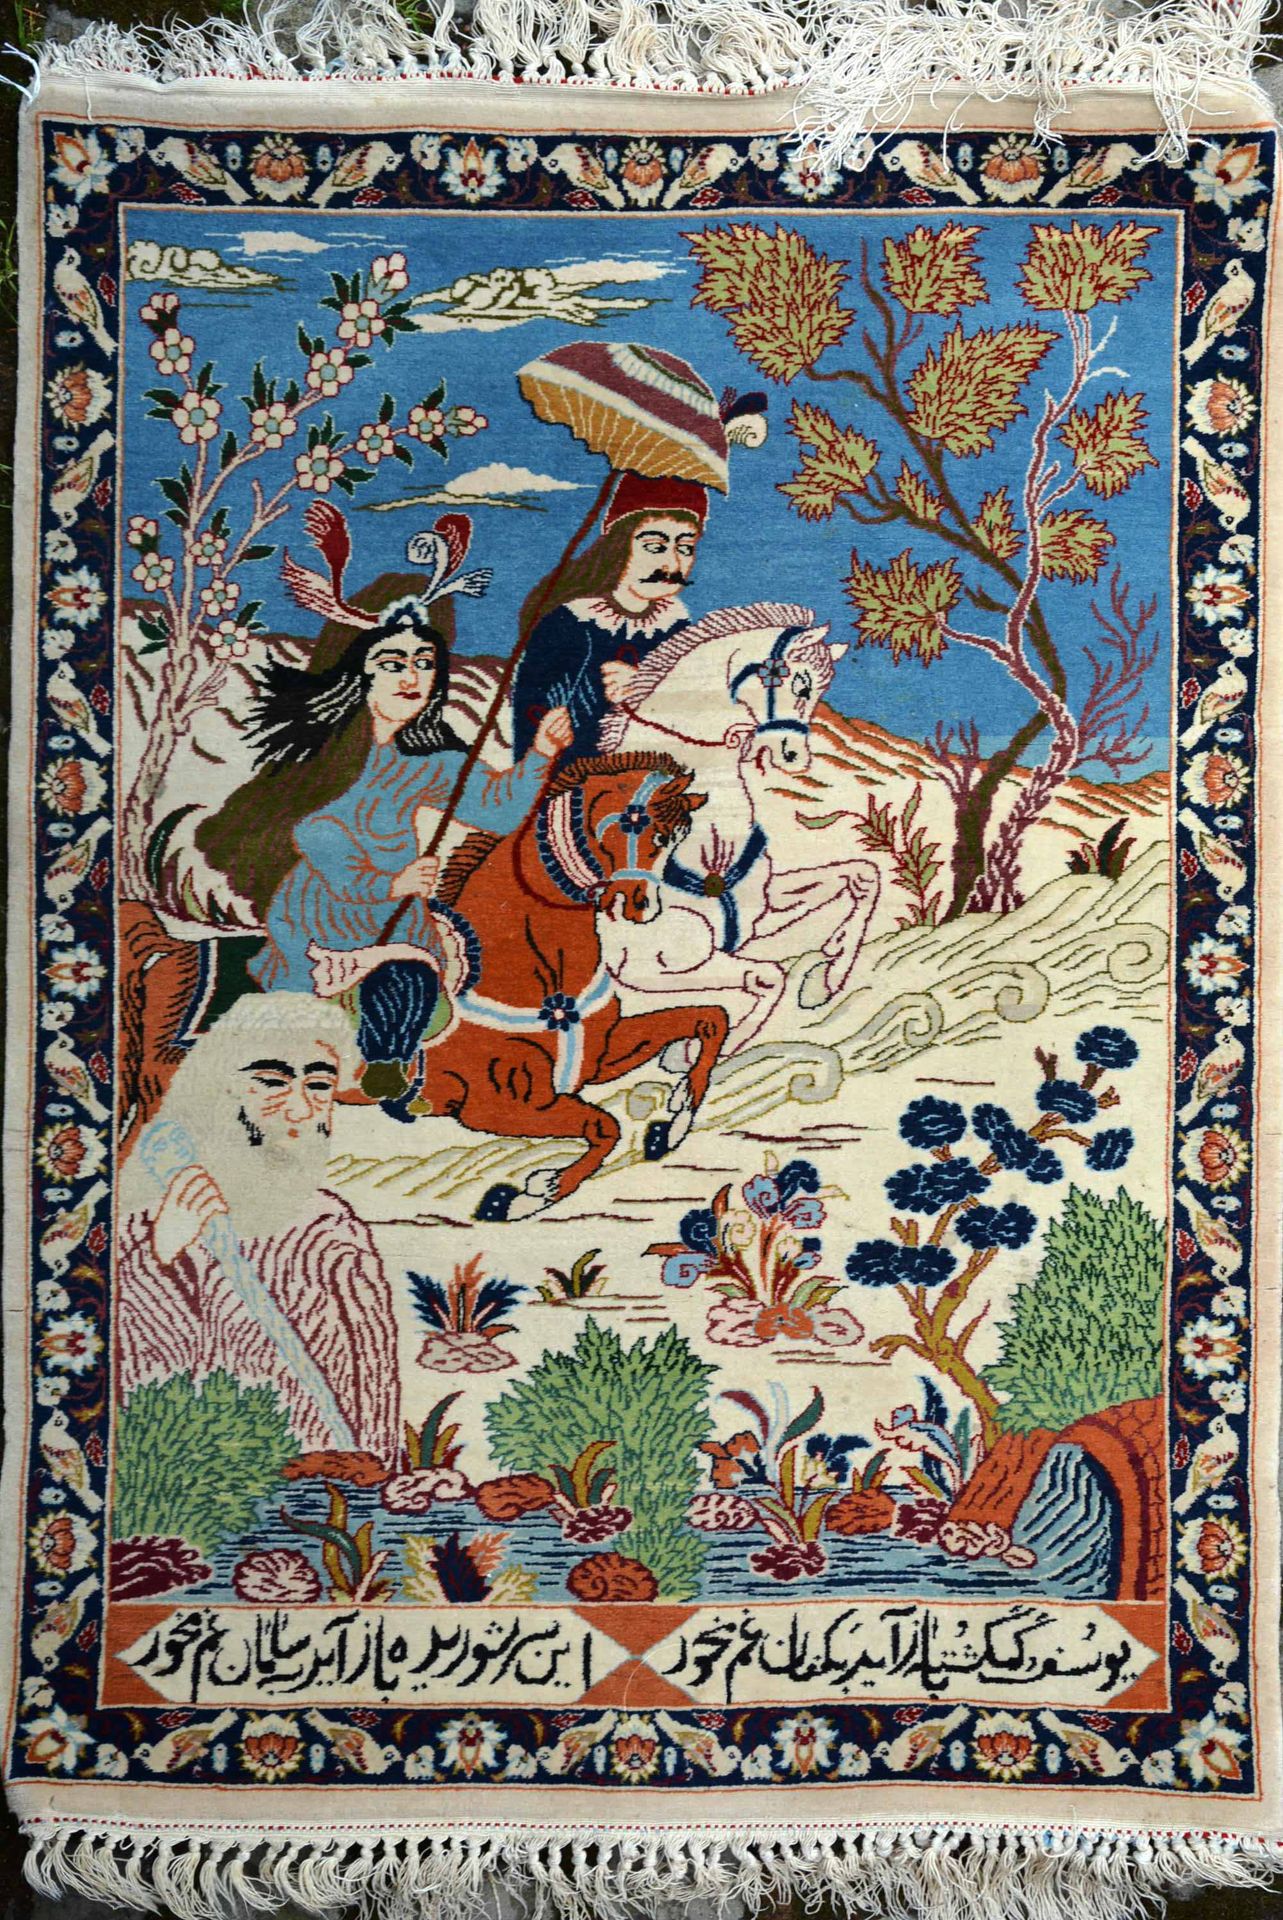 Null 毯子。

伊斯法罕丝质经线地毯（丝质经线，棉质纬线，"kurk "羊毛绒），波斯中部，约1930年。

这块地毯有一个形象的场景，讲述了莱拉和马吉农的&hellip;